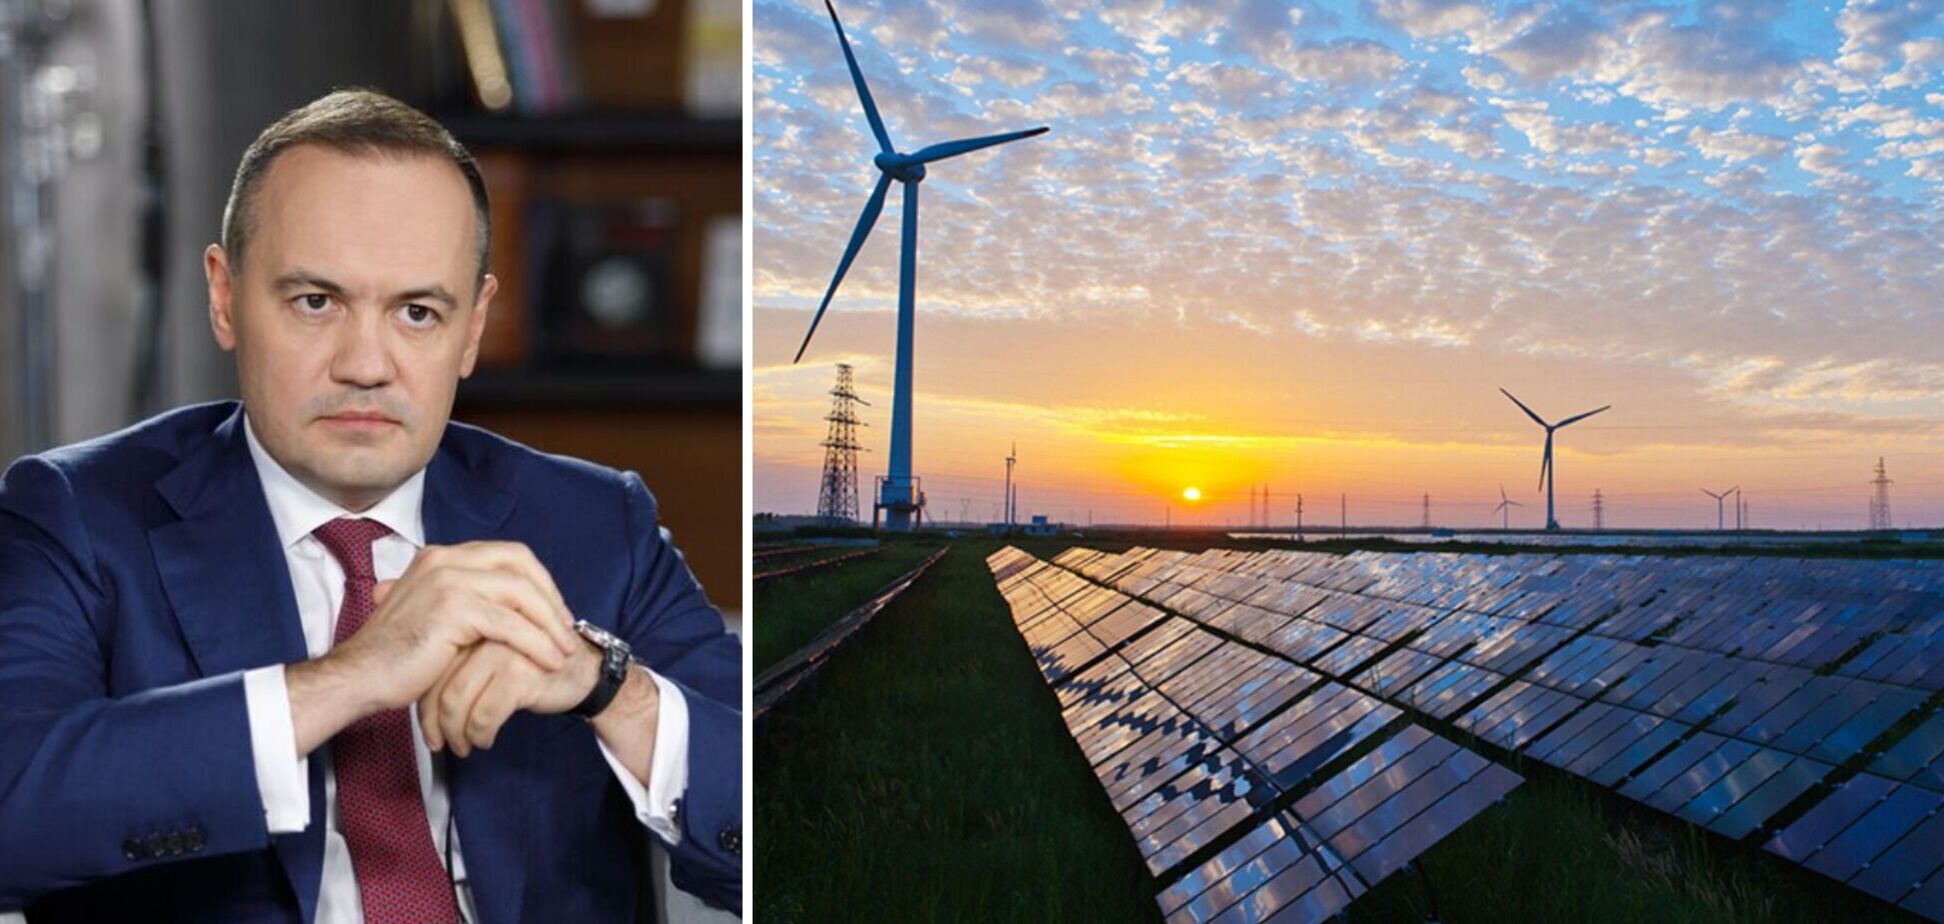 Восстановление Украины должно базироваться на новой 'зеленой' электроэнергии, – гендиректор ДТЭК Тимченко в Давосе